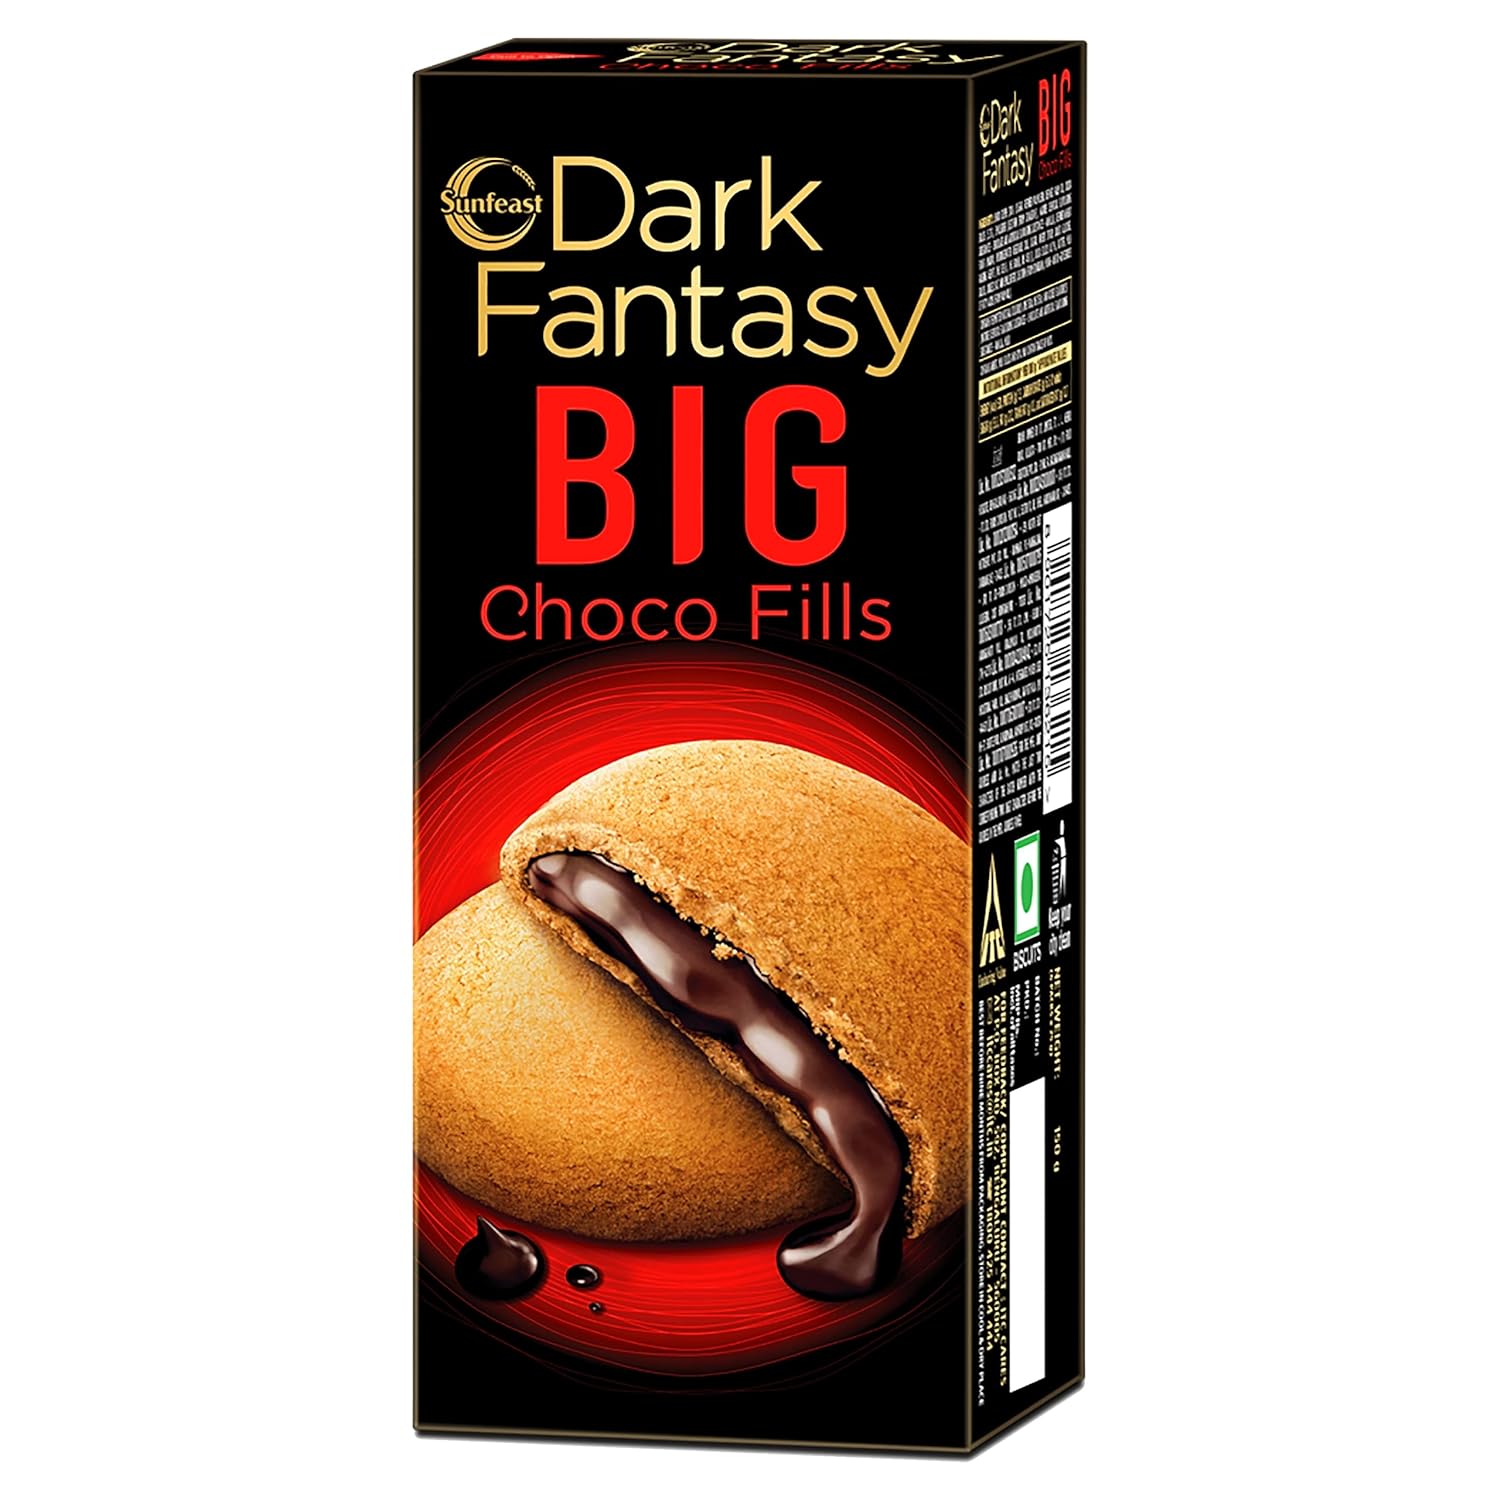 Sunfeast Dark Fantasy Big Choco Fills, 150G, Big Crunchy Cookies Filled With Choco Crème